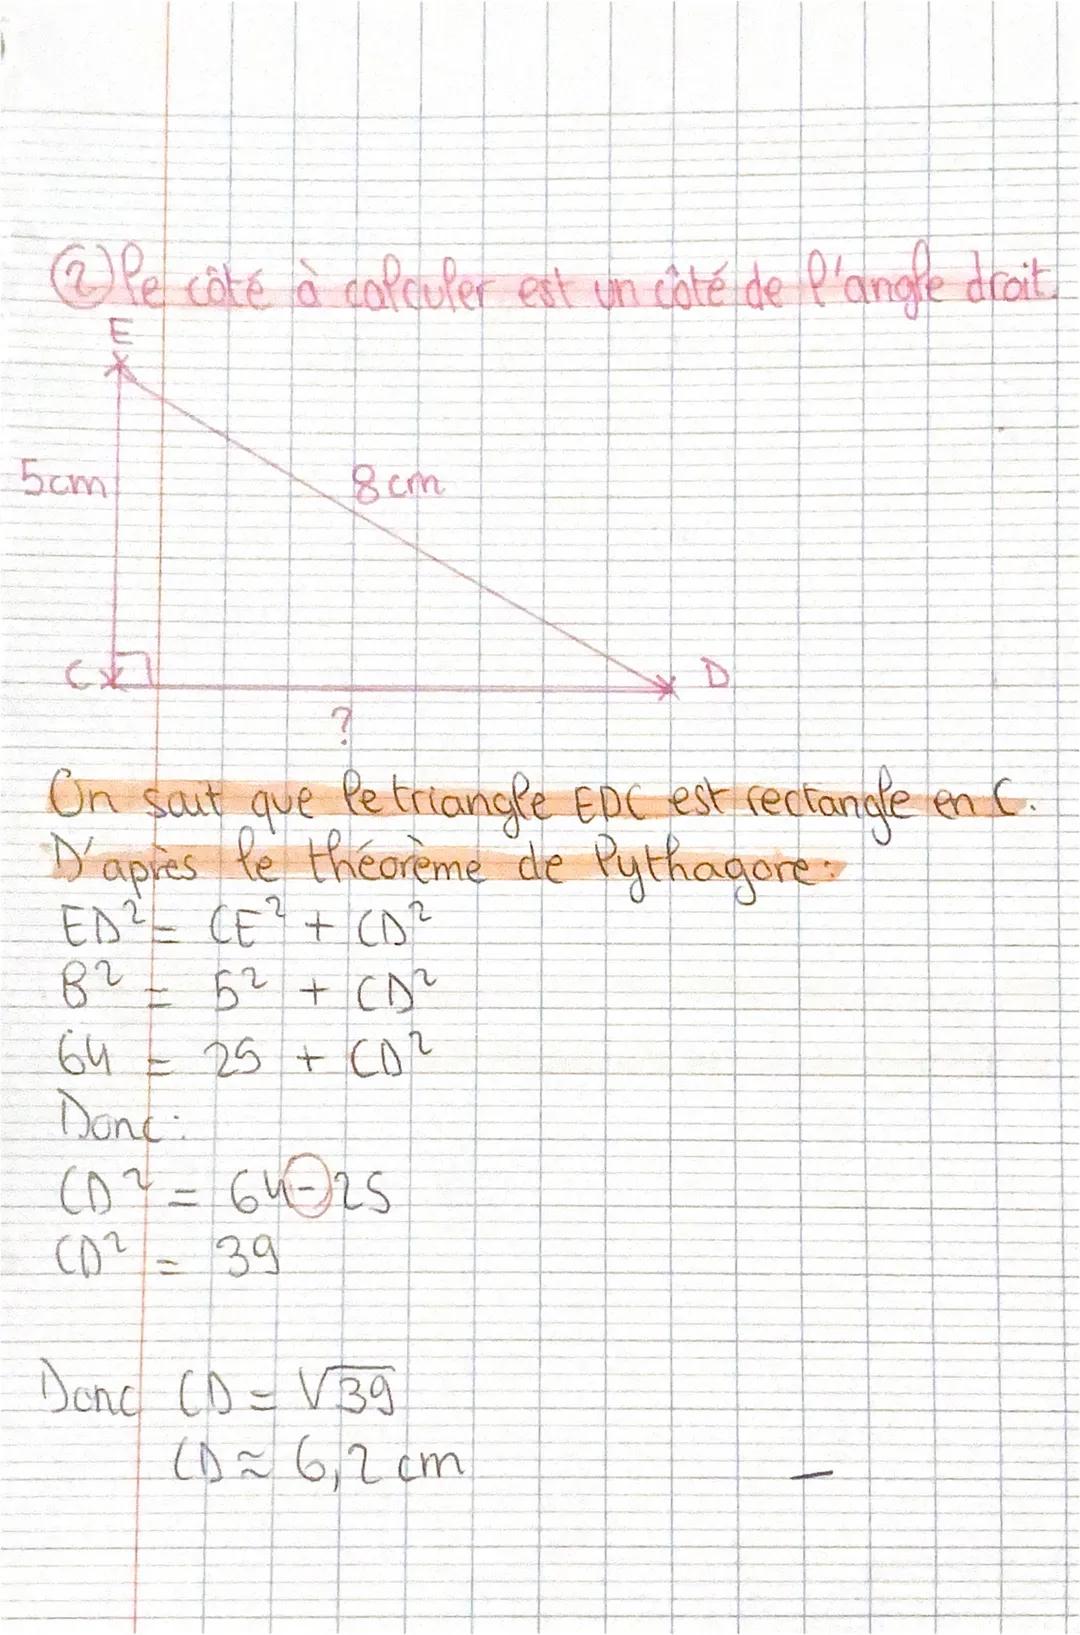 héorème de Puthagore et sa
Chap 1 bis
réciproque
le côté à calculer est Phypotenuse.
C
côté de x
l'angle
droit
6cm
BC² - AB² + AC ²
BC² - 92